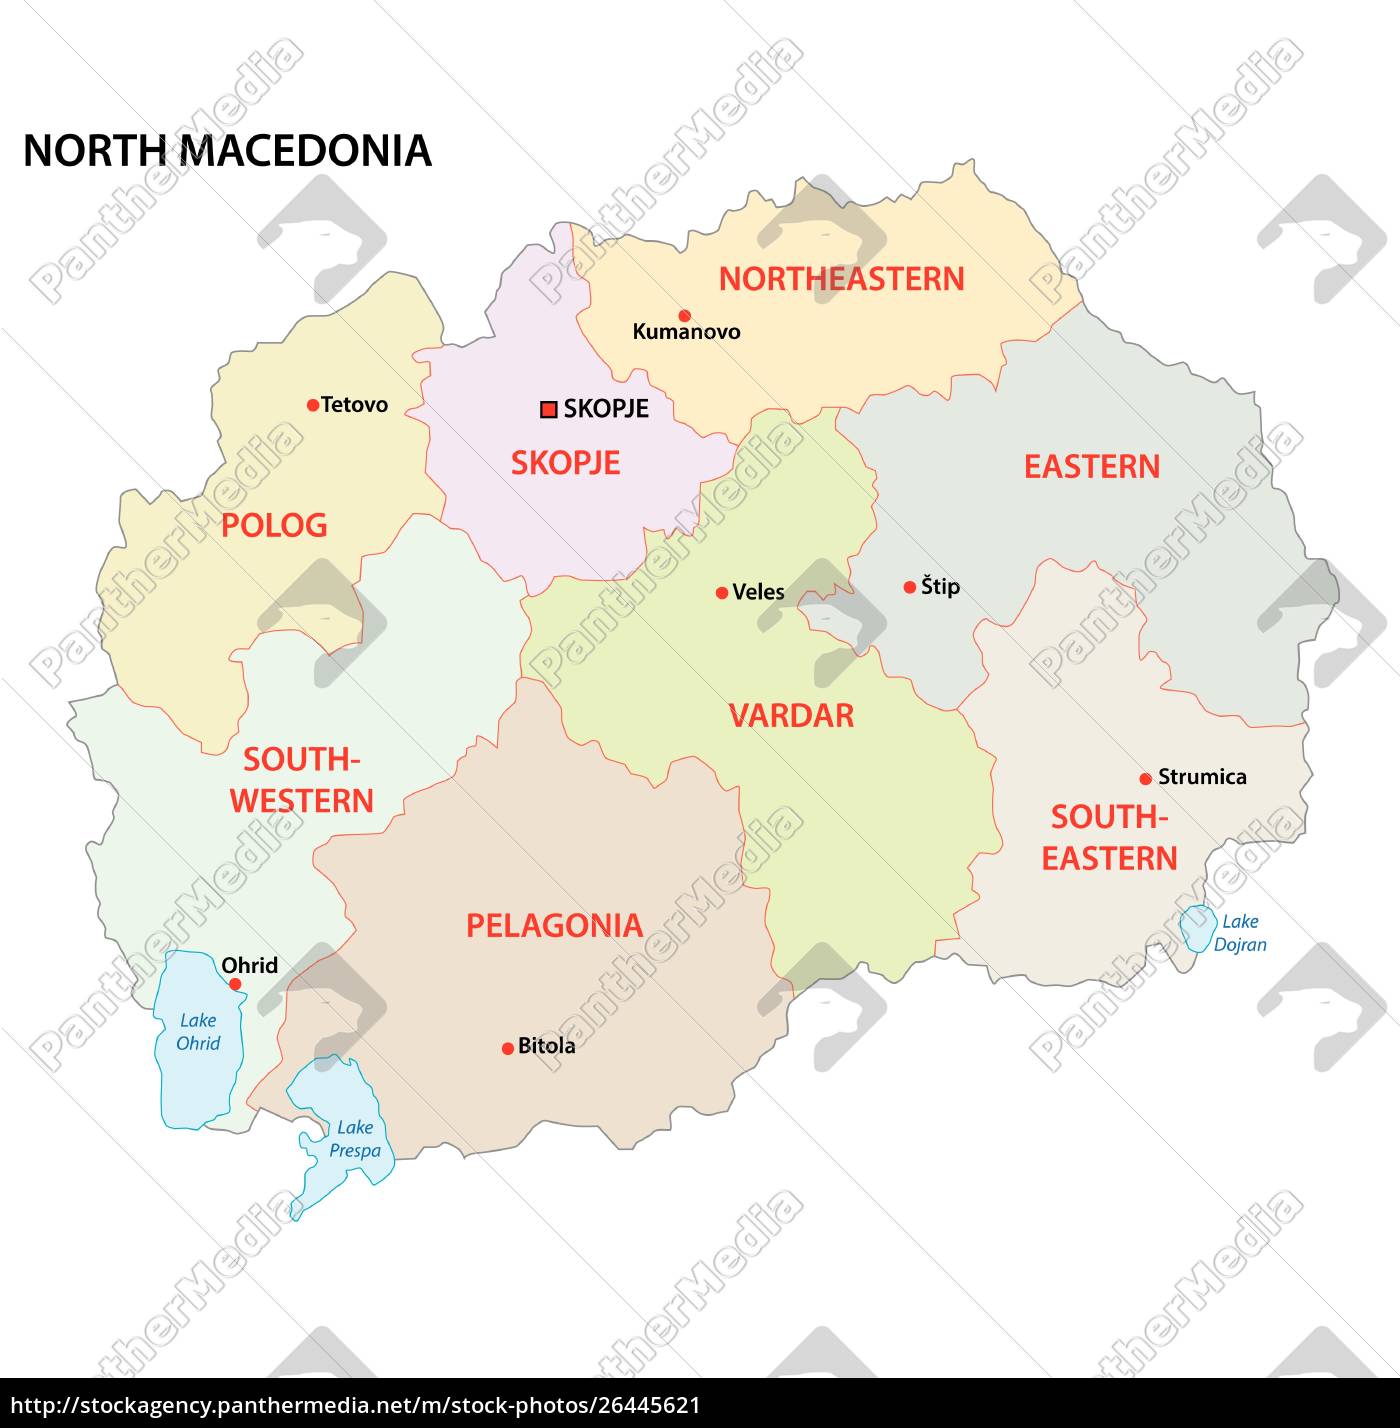 Nord Makedonien Administrative Og Politiske Vektor Kort Stockphoto 26445621 Panthermedia Billedbureau